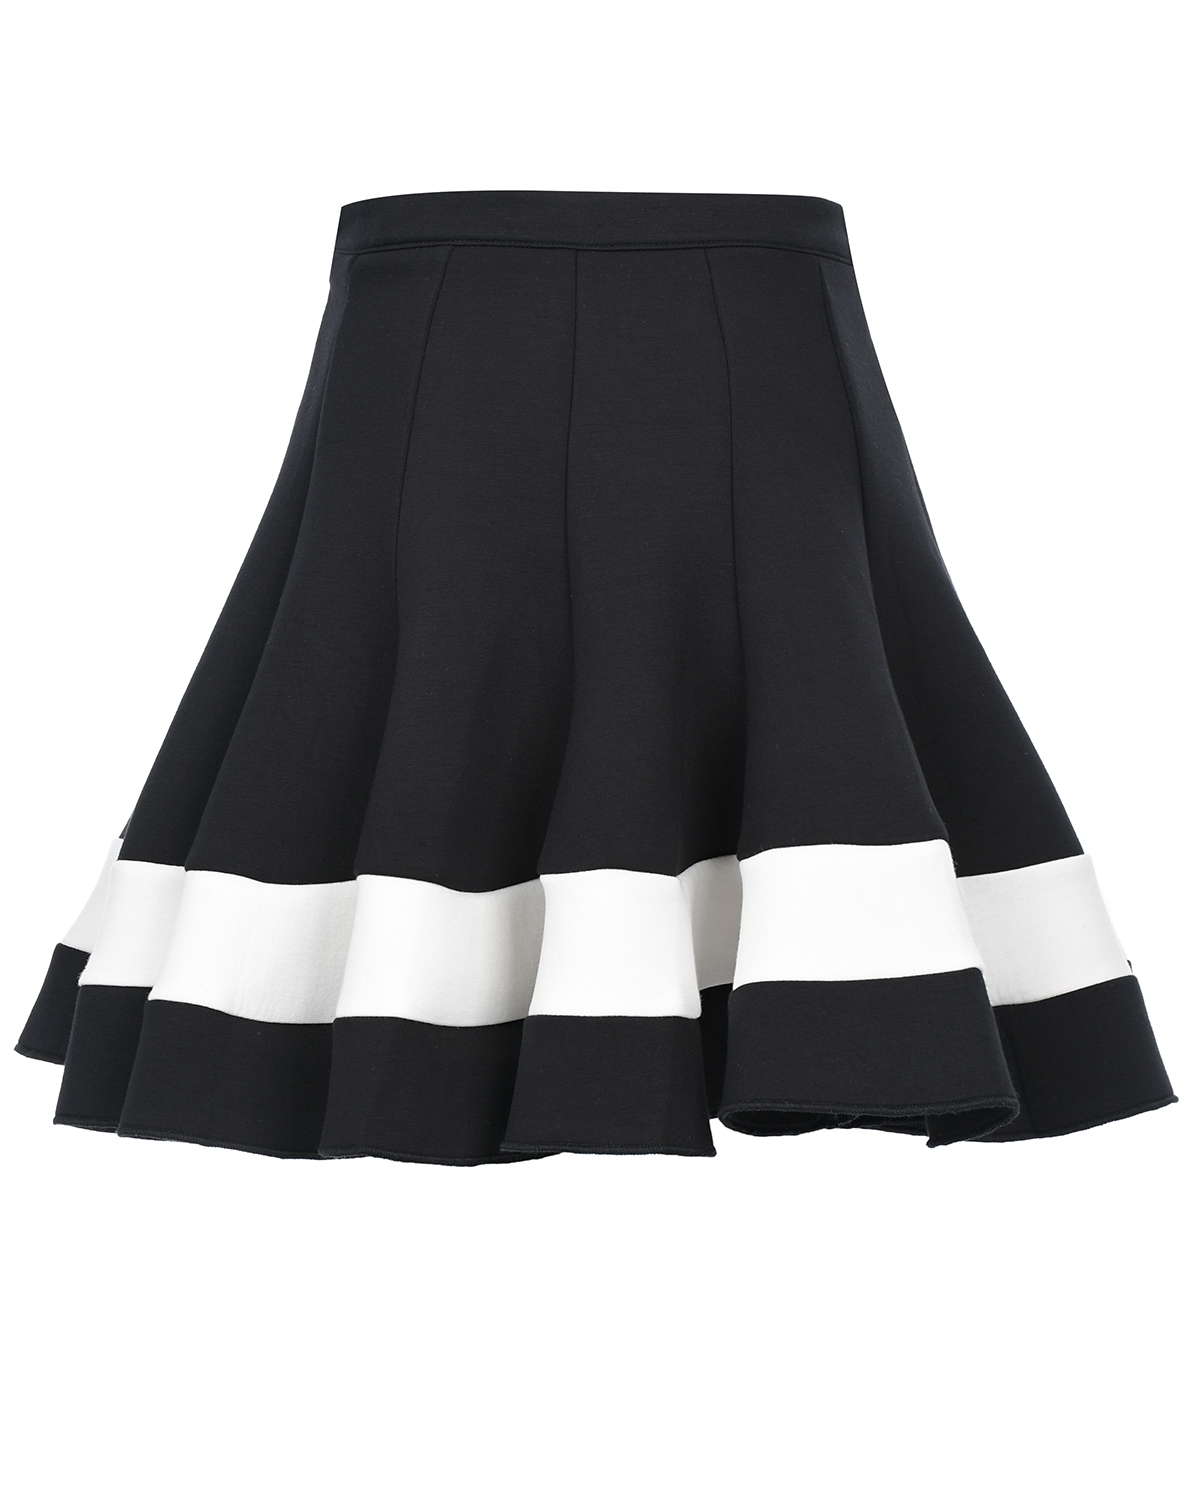 Расклешенная юбка с отделкой белой полосой TWINSET детская, размер 128, цвет черный - фото 2